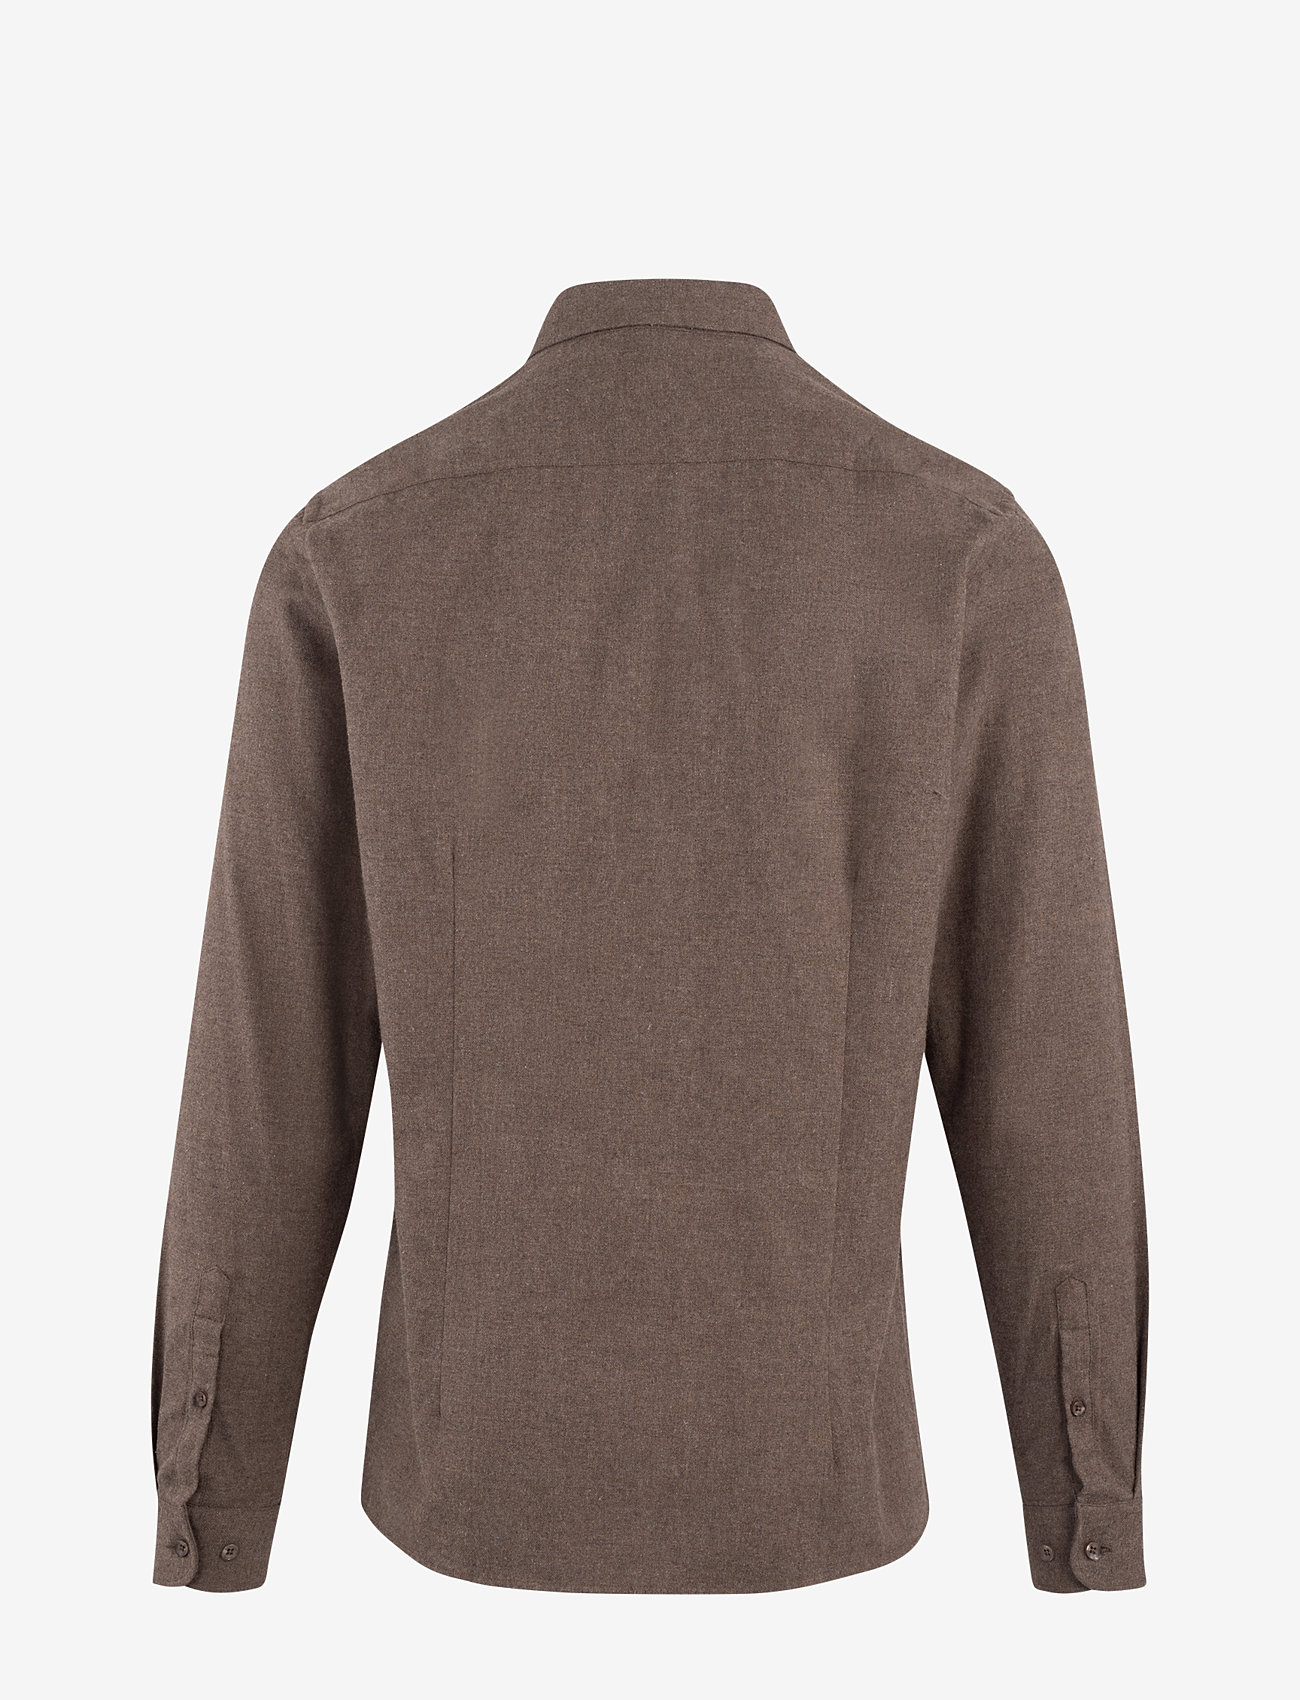 Urban Pioneers - Brimi Shirt - basic shirts - brown melange - 1